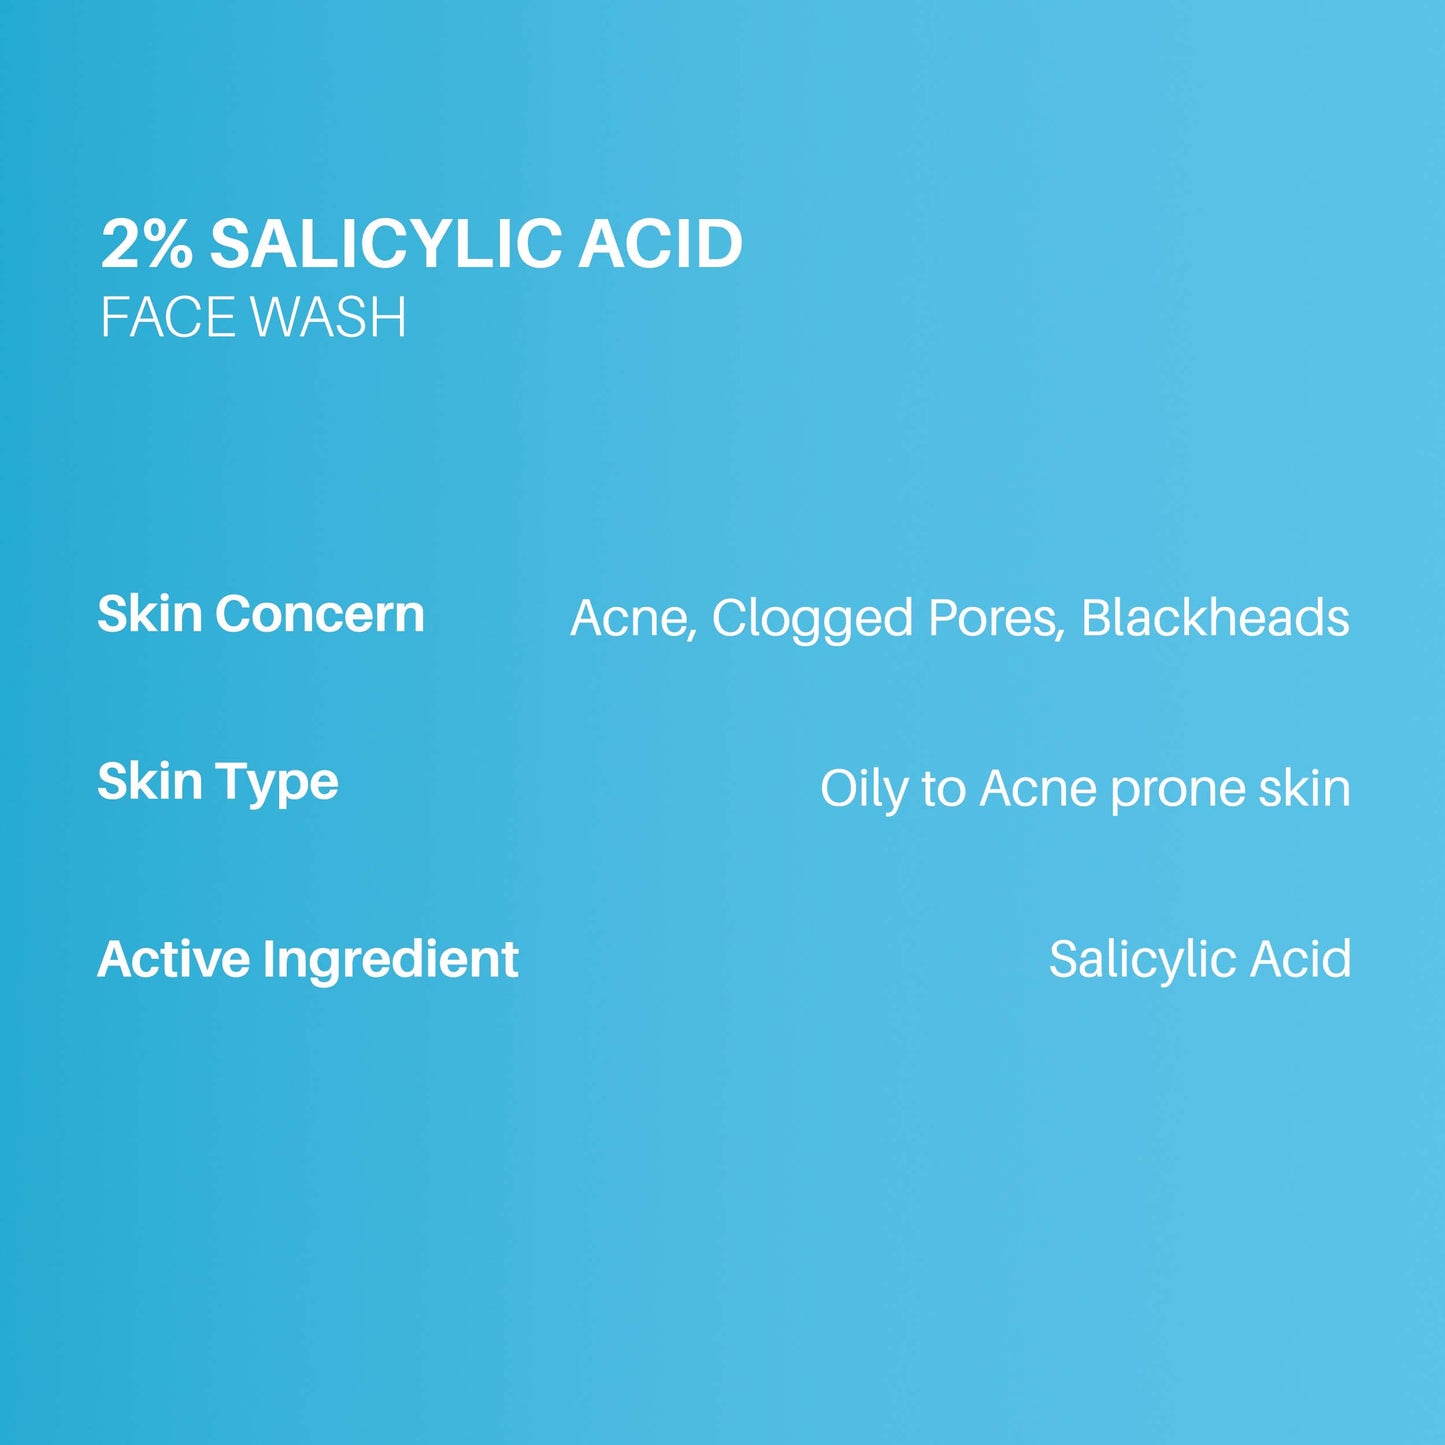 DermDoc 2% Salicylic Acid Anti Acne Face Wash For Clear & Acne Free Skin (60ml)